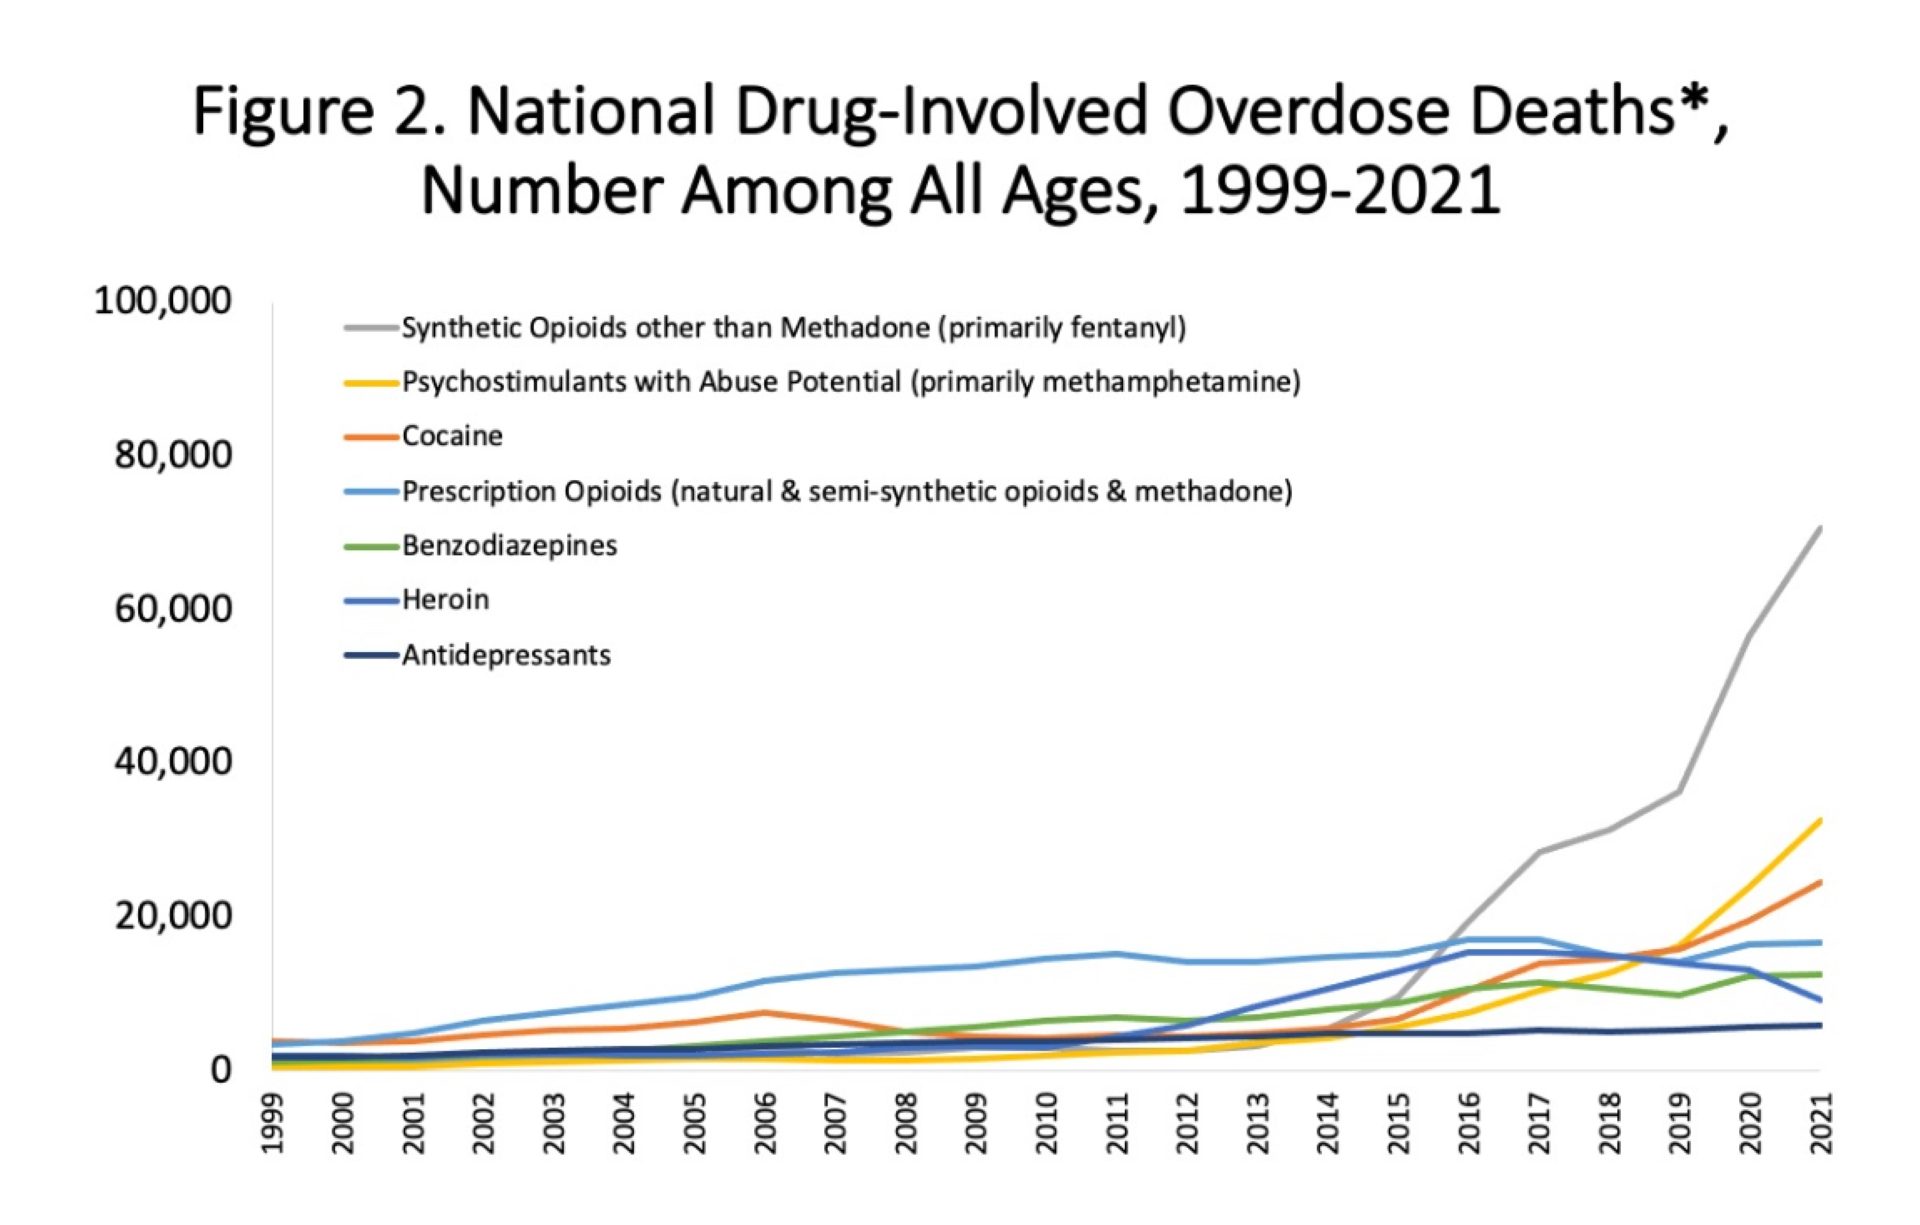 Implicado en casi el 70% de las muertes por sobredosis